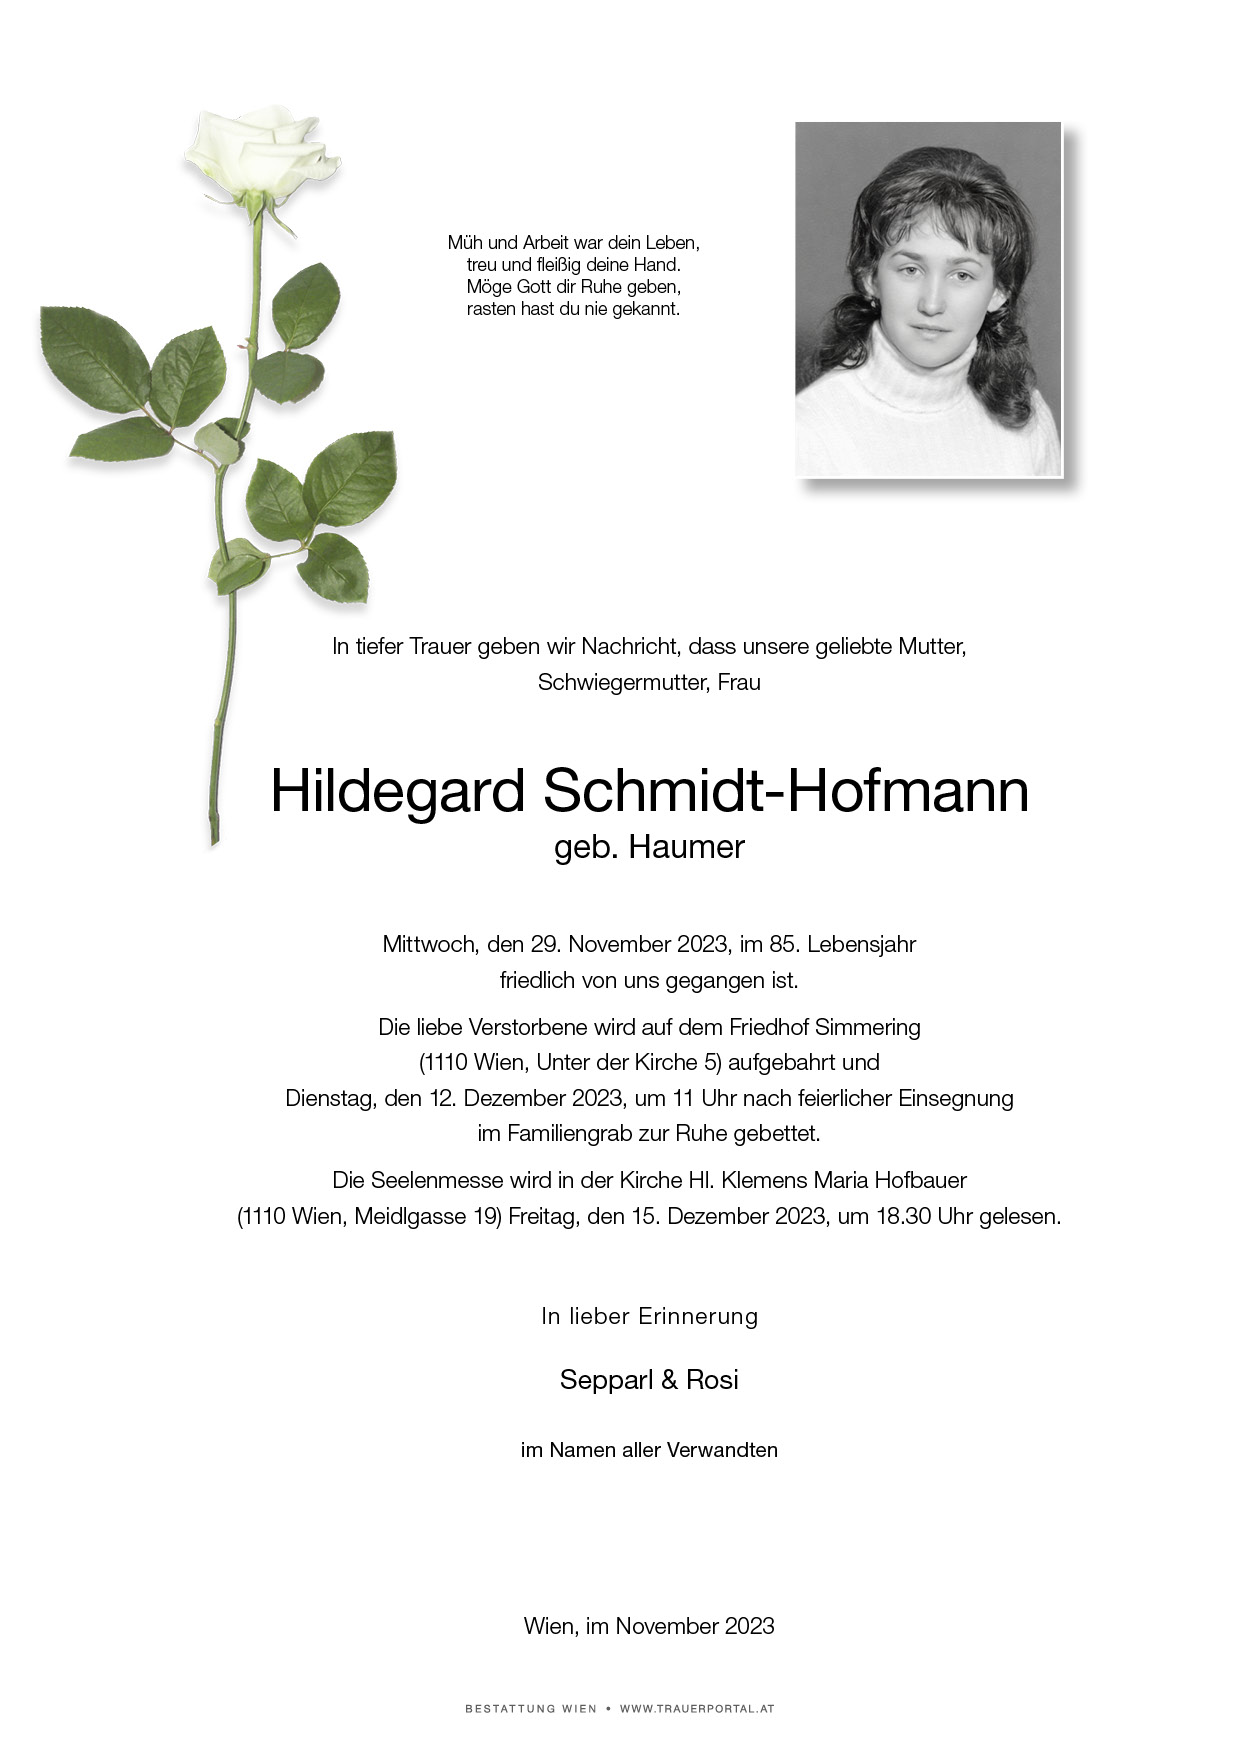 Hildegard Schmidt